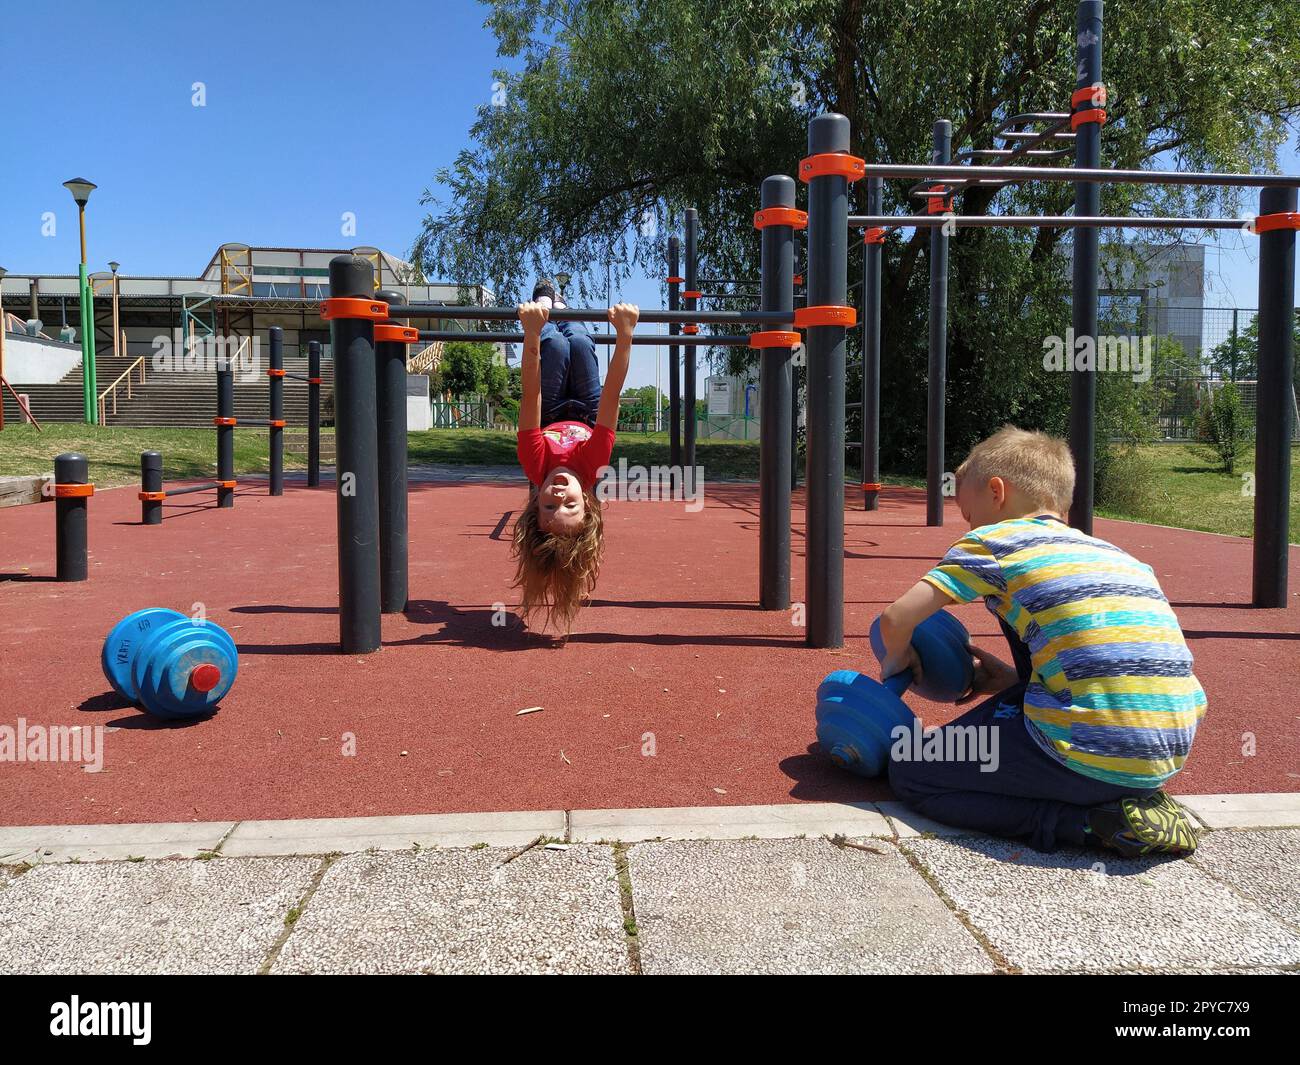 6 giugno 2020, Sremska Mitrovica, Serbia. I bambini vanno a fare sport nel parco giochi. Esercizi con kettlebell. Pesi di sollevamento. Educazione fisica e sport. Divertimento per bambini in estate Foto Stock